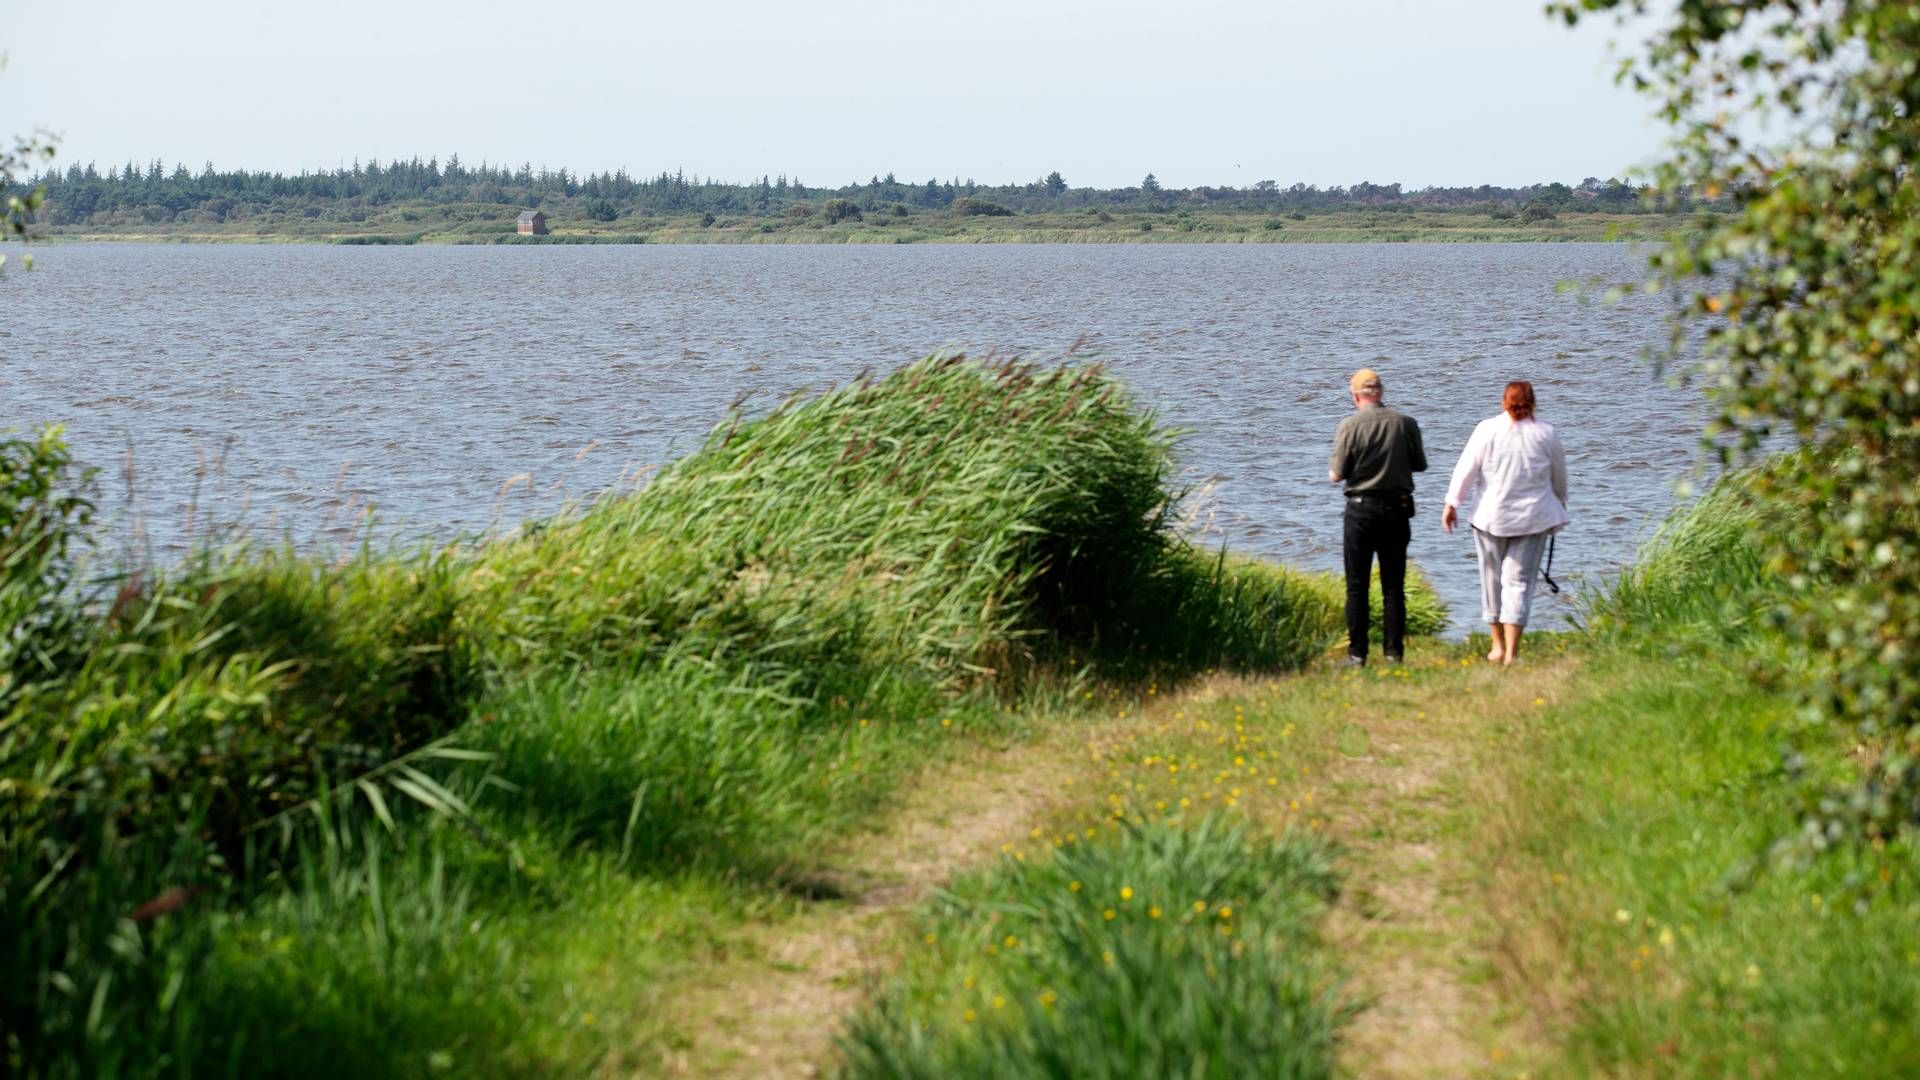 Aage V. Jensens Naturfond erhvervede i 2010 Filsøområdet og genoprettede søen. | Foto: Morten Langkilde